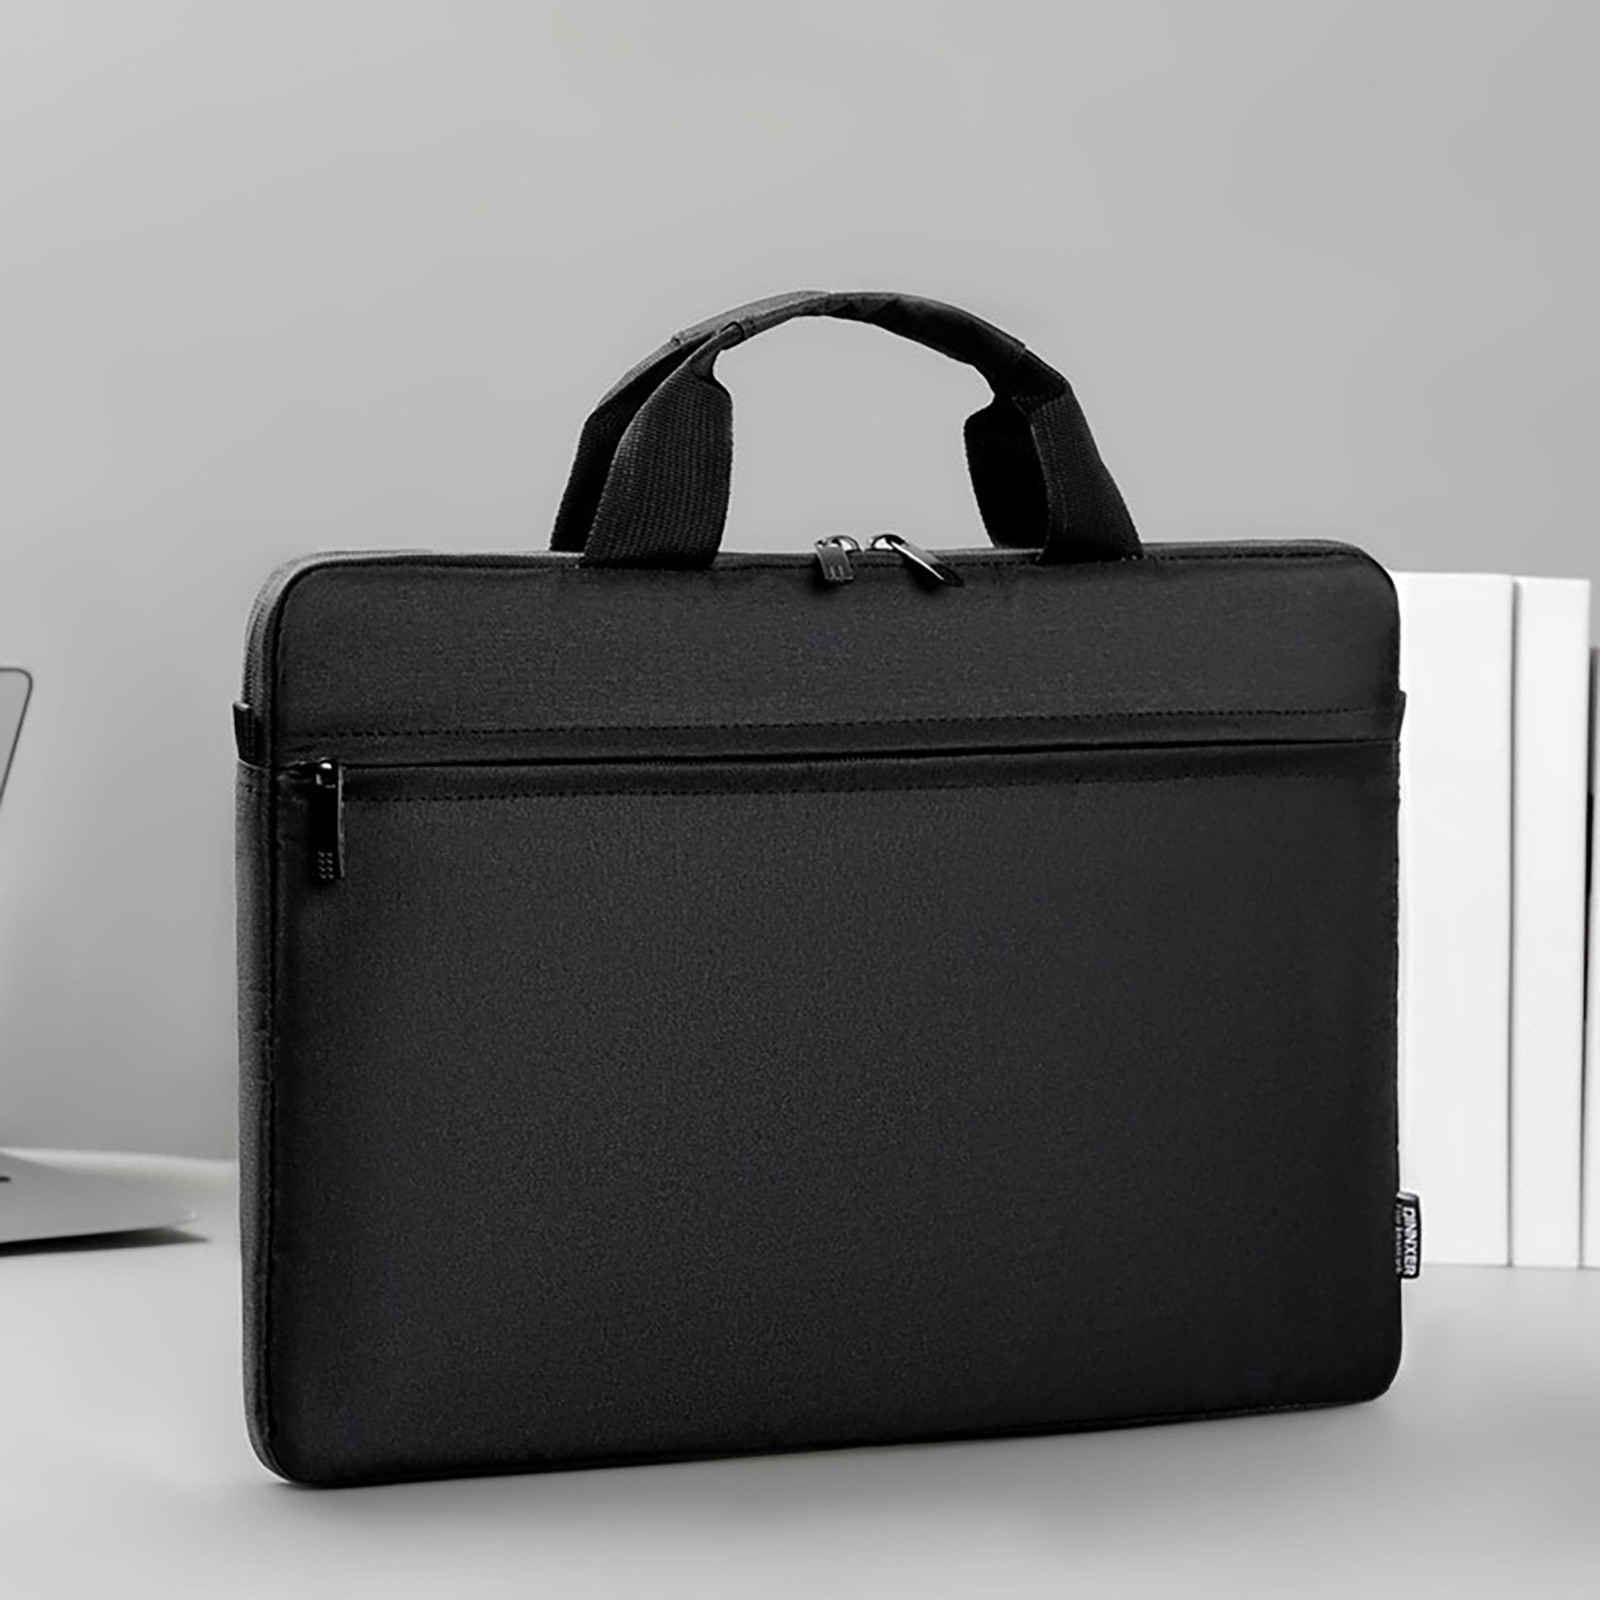 Wovilon Laptop Bag 15.6 Inch Briefcase Shoulder Bag Water Repellent Laptop Bag Satchel Tablet Bussiness Carrying Handbag Laptop Sleeve for Women and Men-Charcoal Black - image 2 of 8